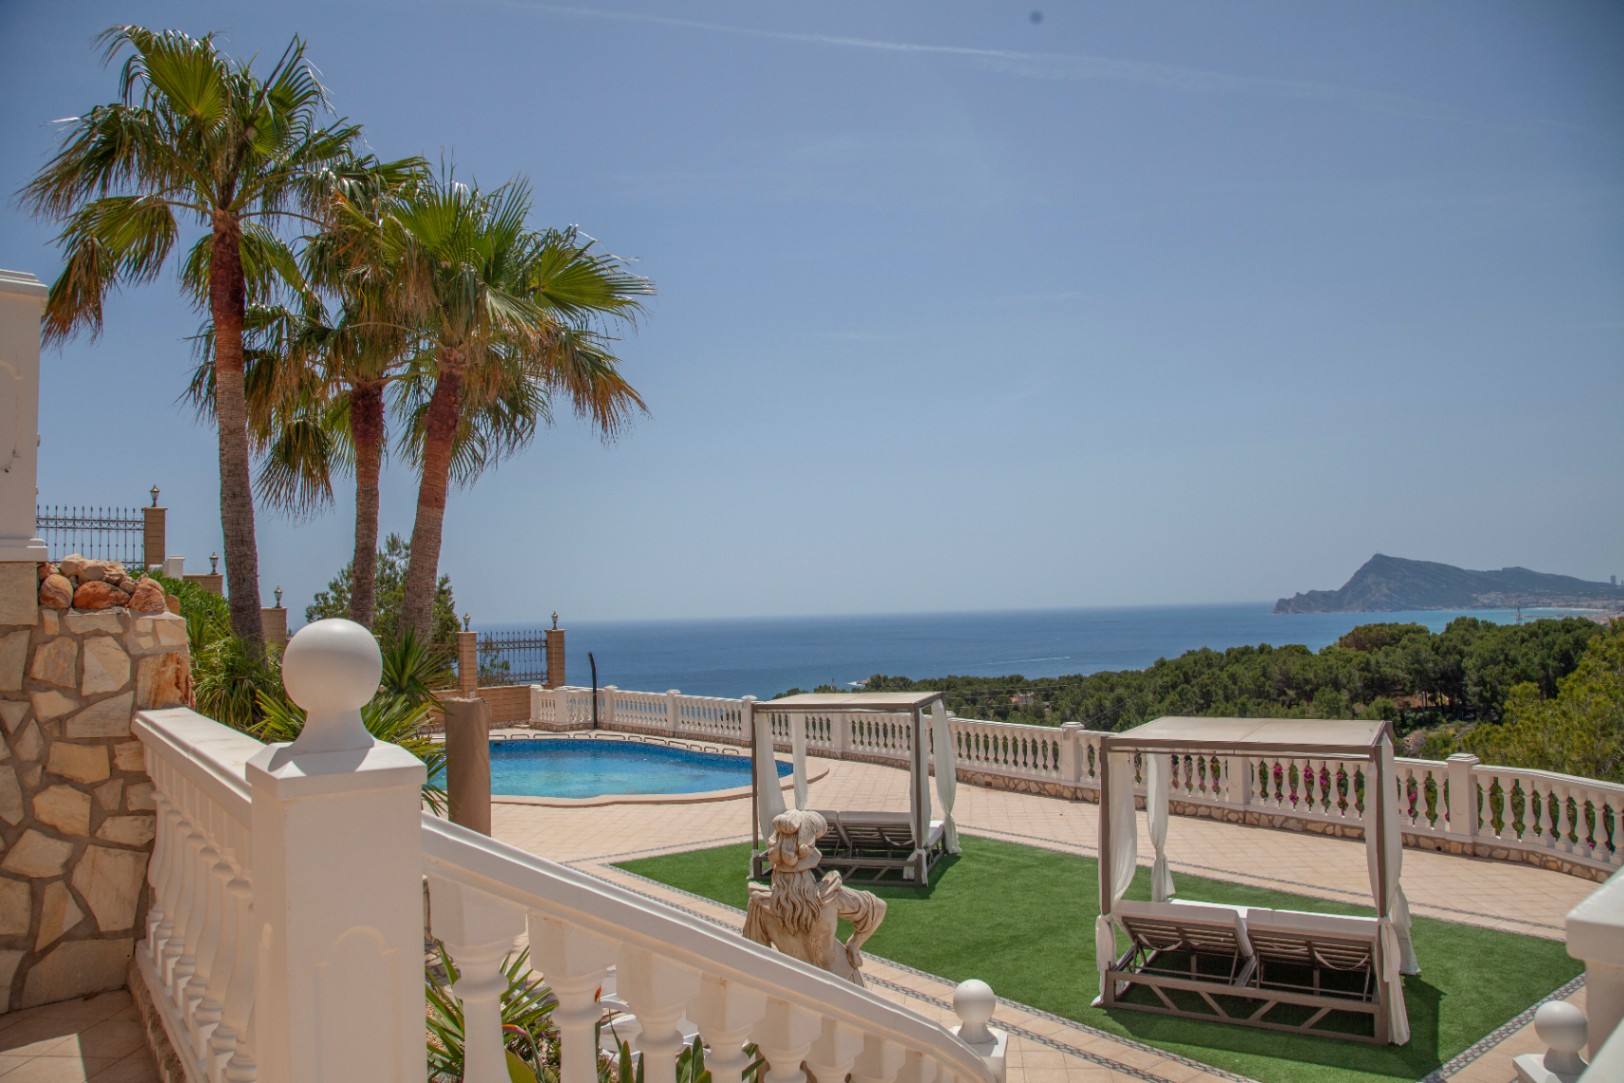 A vendre un complexe exquis composé de deux majestueuses villas dans la ville pittoresque d'Altea, une oasis de tranquillité sur la resplendissante Costa Blanca, à seulement 60 km de l'aéroport d'Alicante.